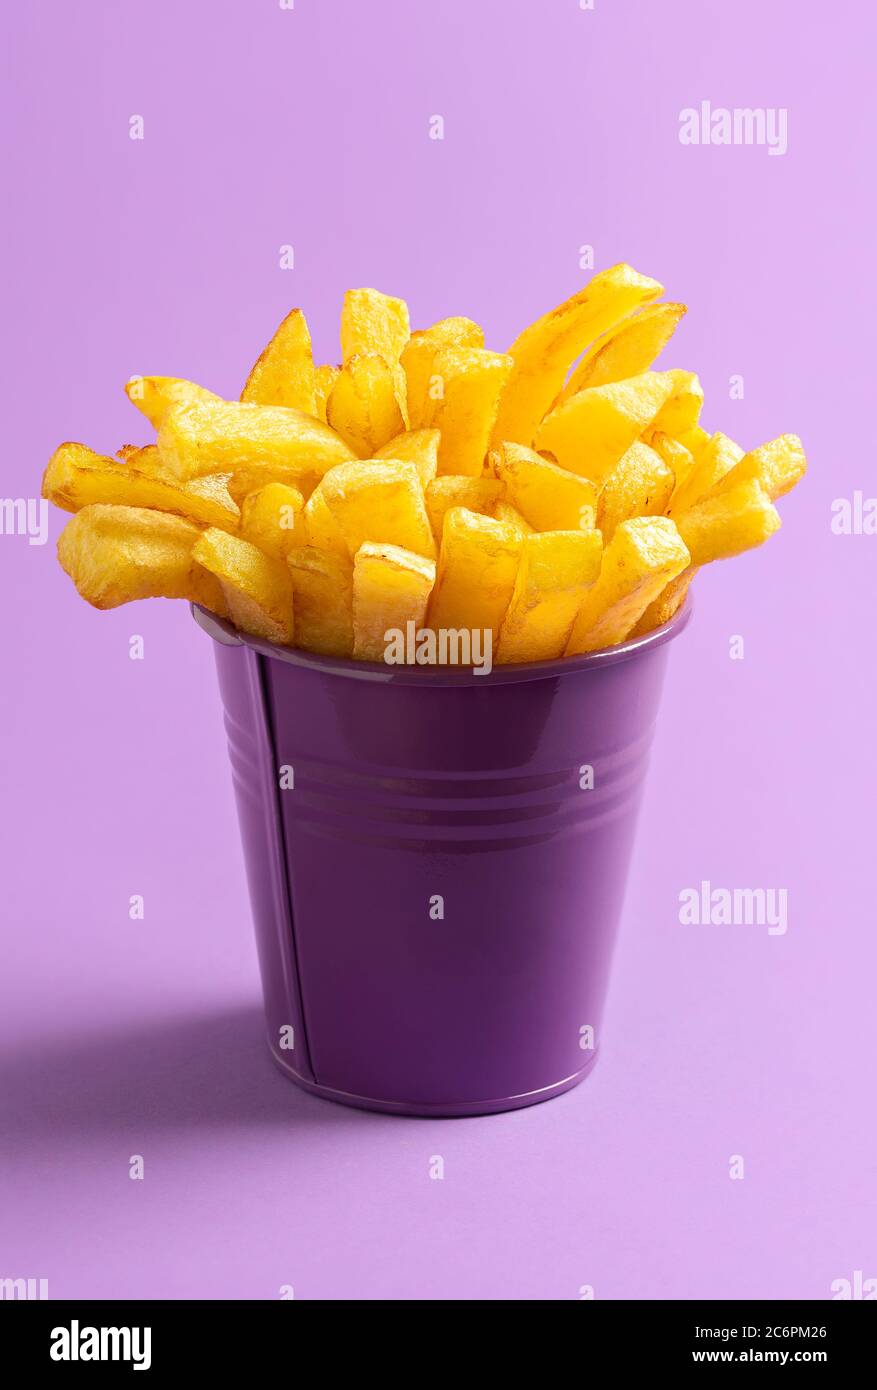 Eimer Pommes frites isoliert auf lila nahtlosen Hintergrund. Goldene frittierte Kartoffeln in einem lila Eimer. Hausgemachte Fingerchips. Fast Food Rezept Stockfoto